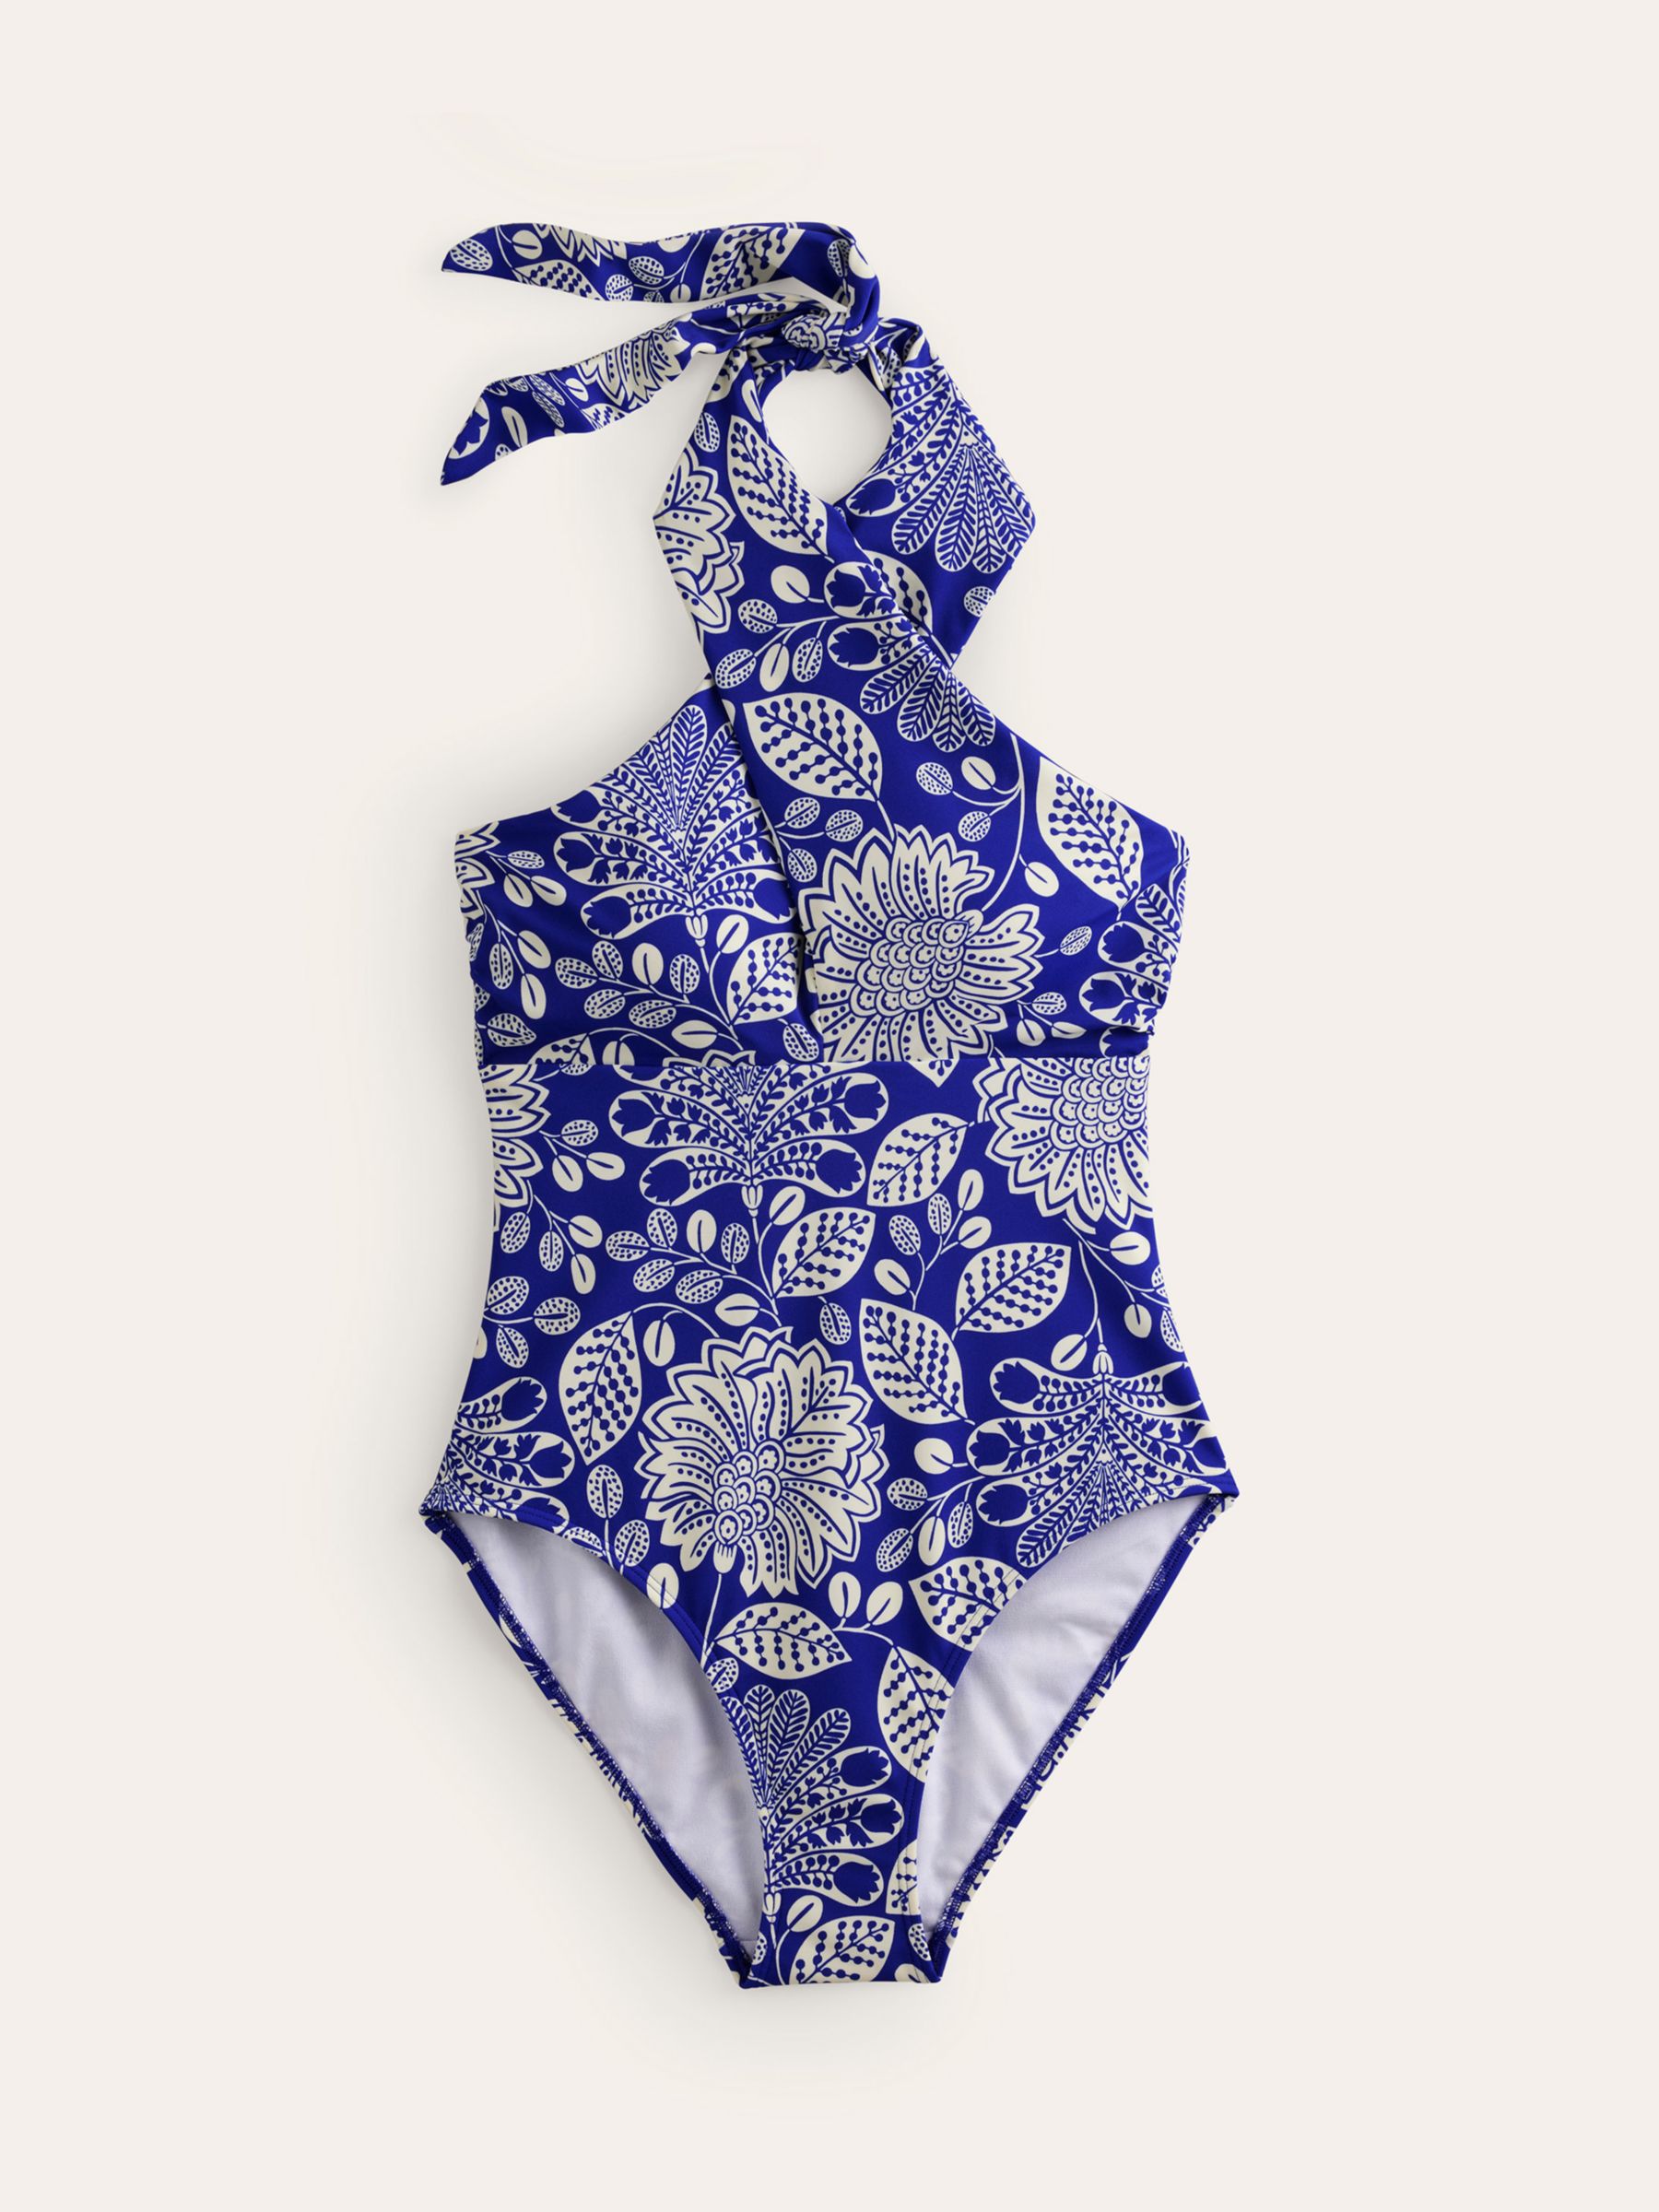 Boden Botanical Print Cross Front Halterneck Swimsuit, Blue/White, 14